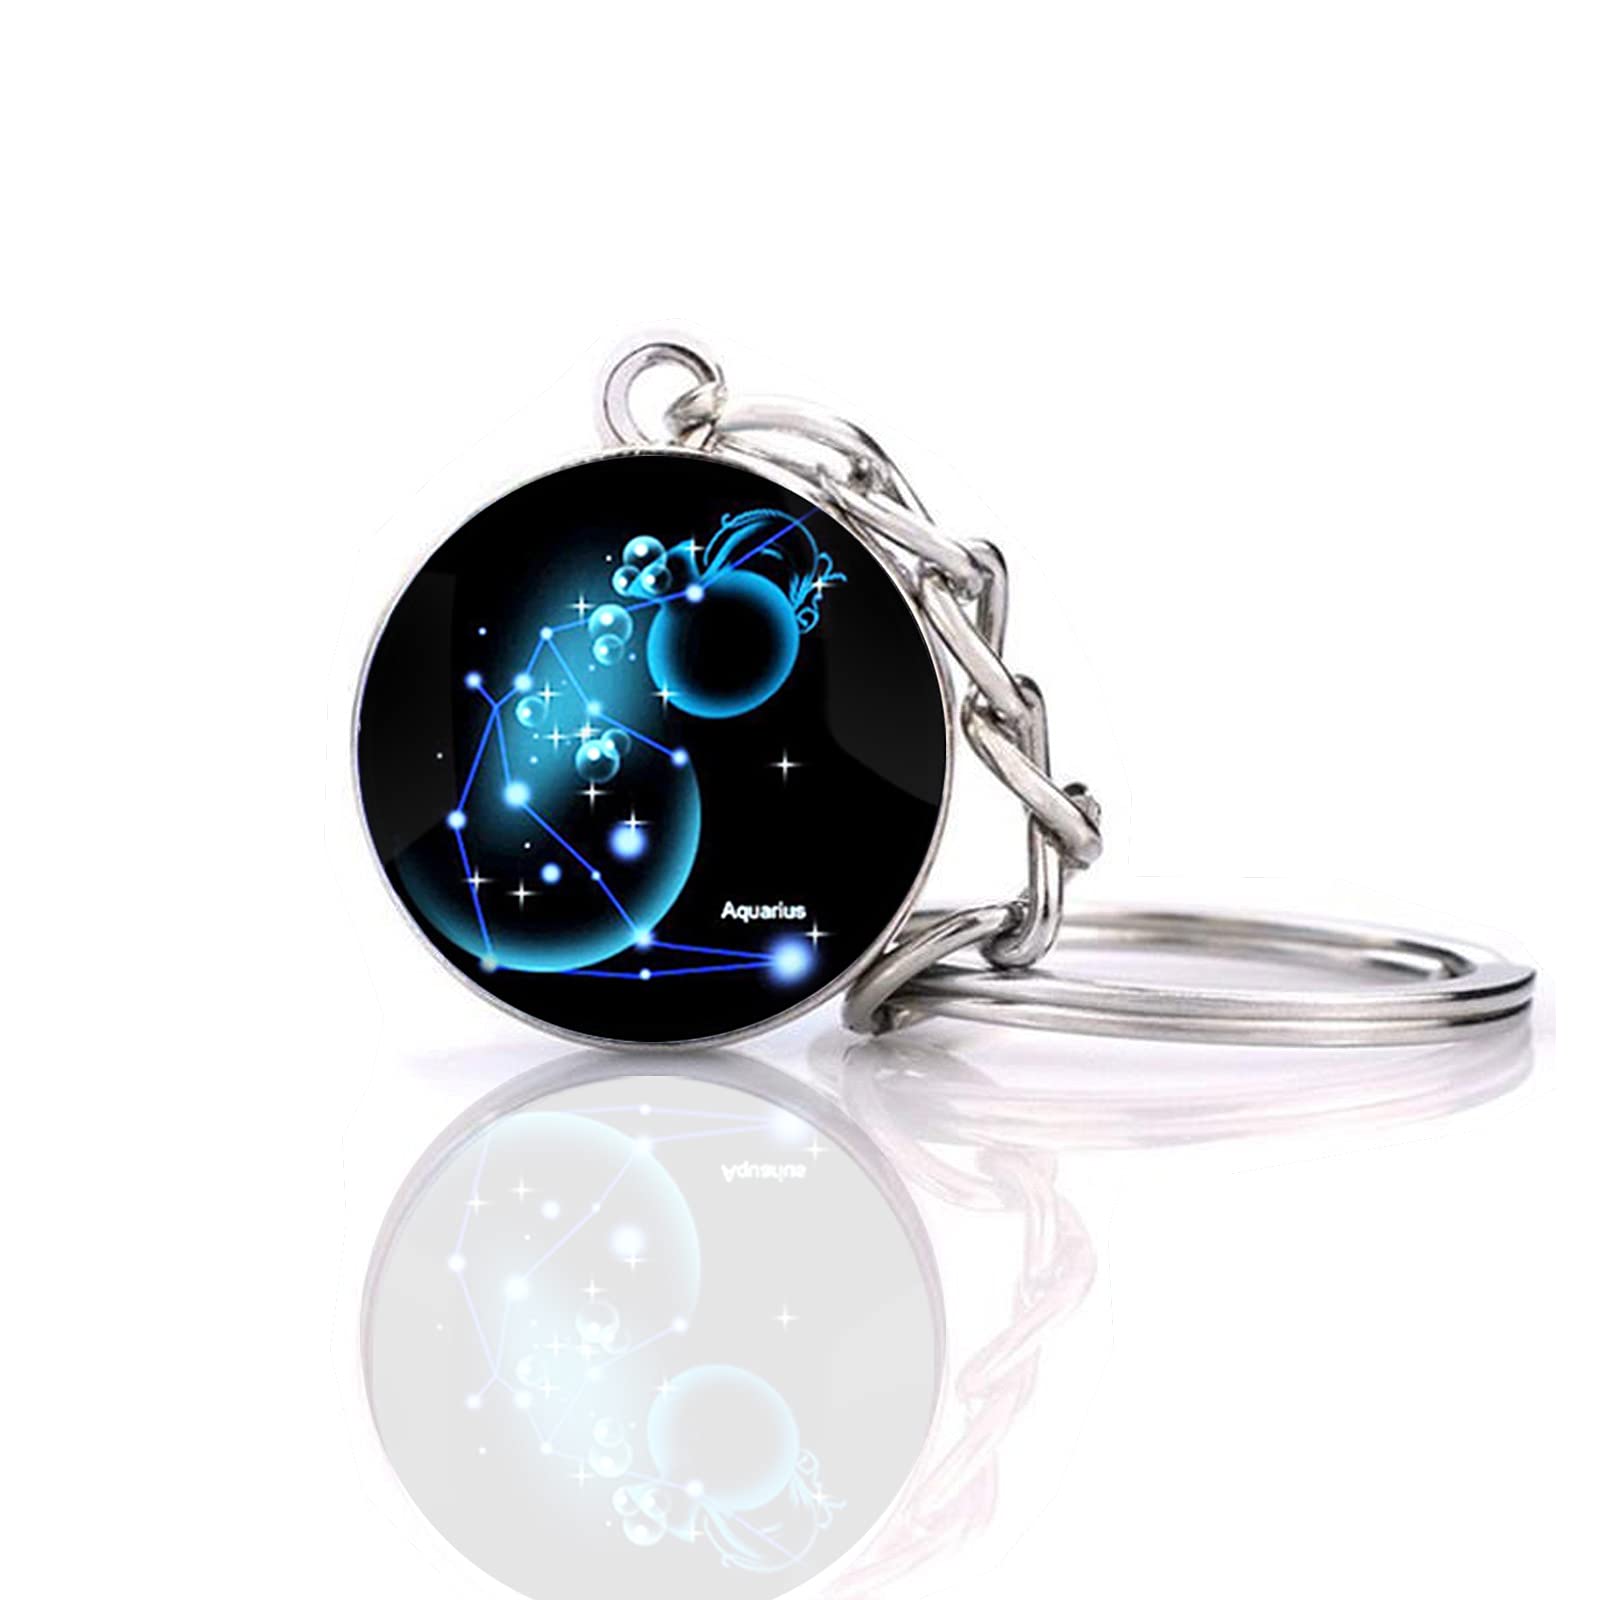 JWPavilion Zodiac 12 Constellation Glow In The Dark Creative Galaxy Schlüsselanhänger, Wassermann 1, Einheitsgröße von JWPavilion